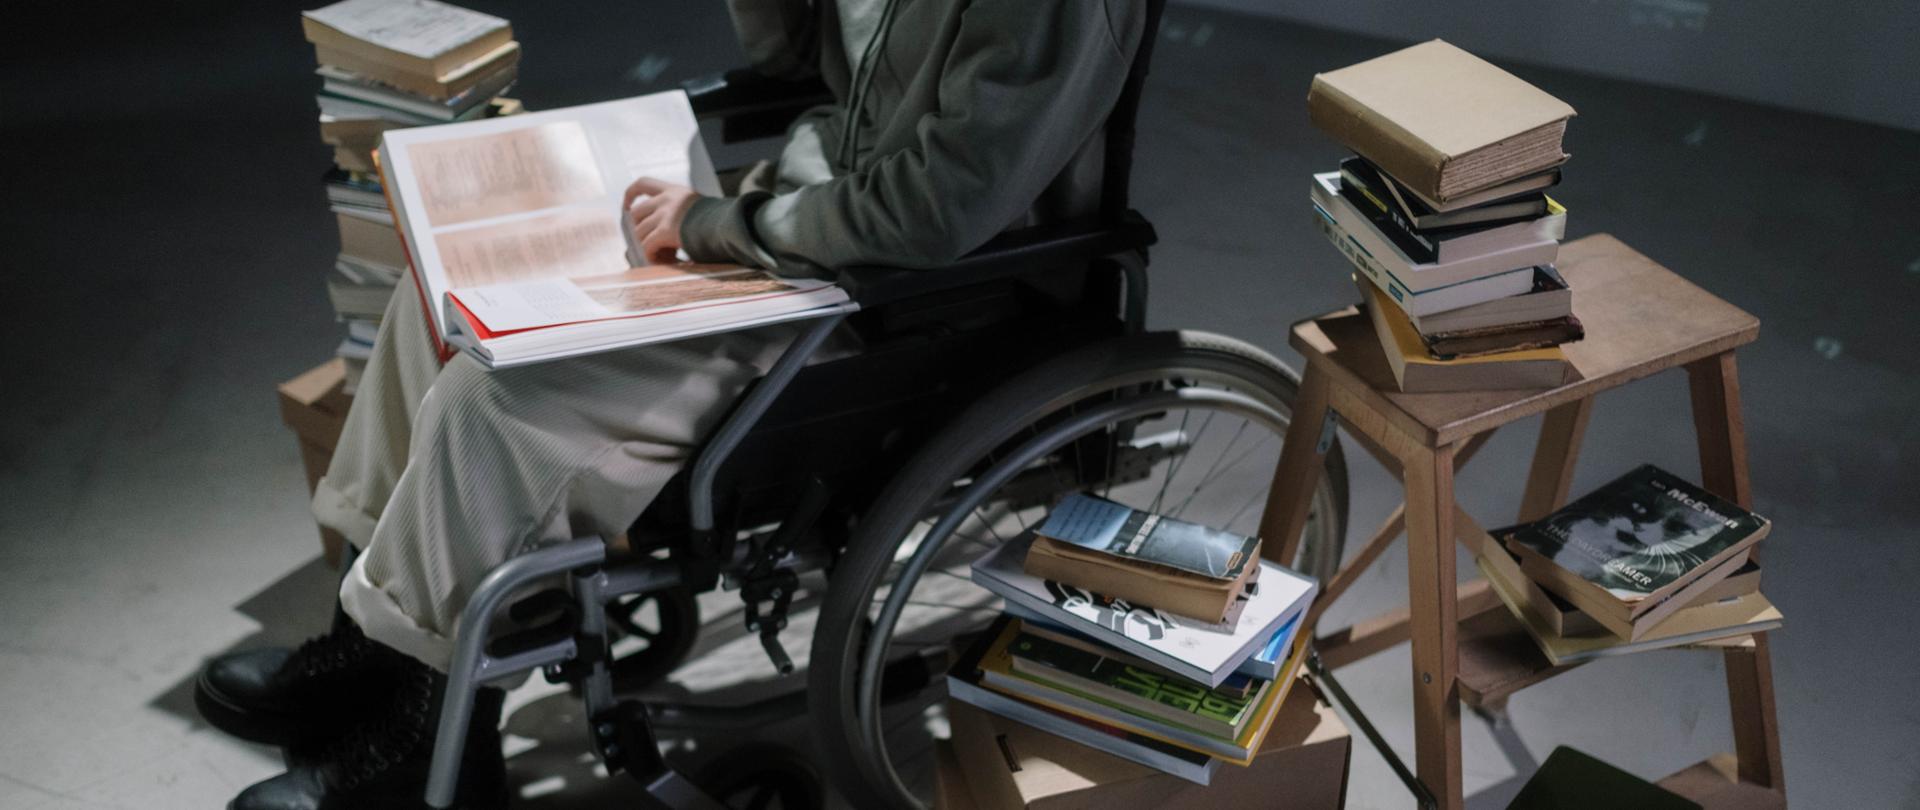 Człowiek siedzi na wózku inwalidzkim. Na kolanach trzyma dużą książkę. Z jego prawej i lewej strony stoją książki ułożone w stosy. Z lewej strony stoi mała drewniana drabinka oraz kartony. Na nich ułożone książki.